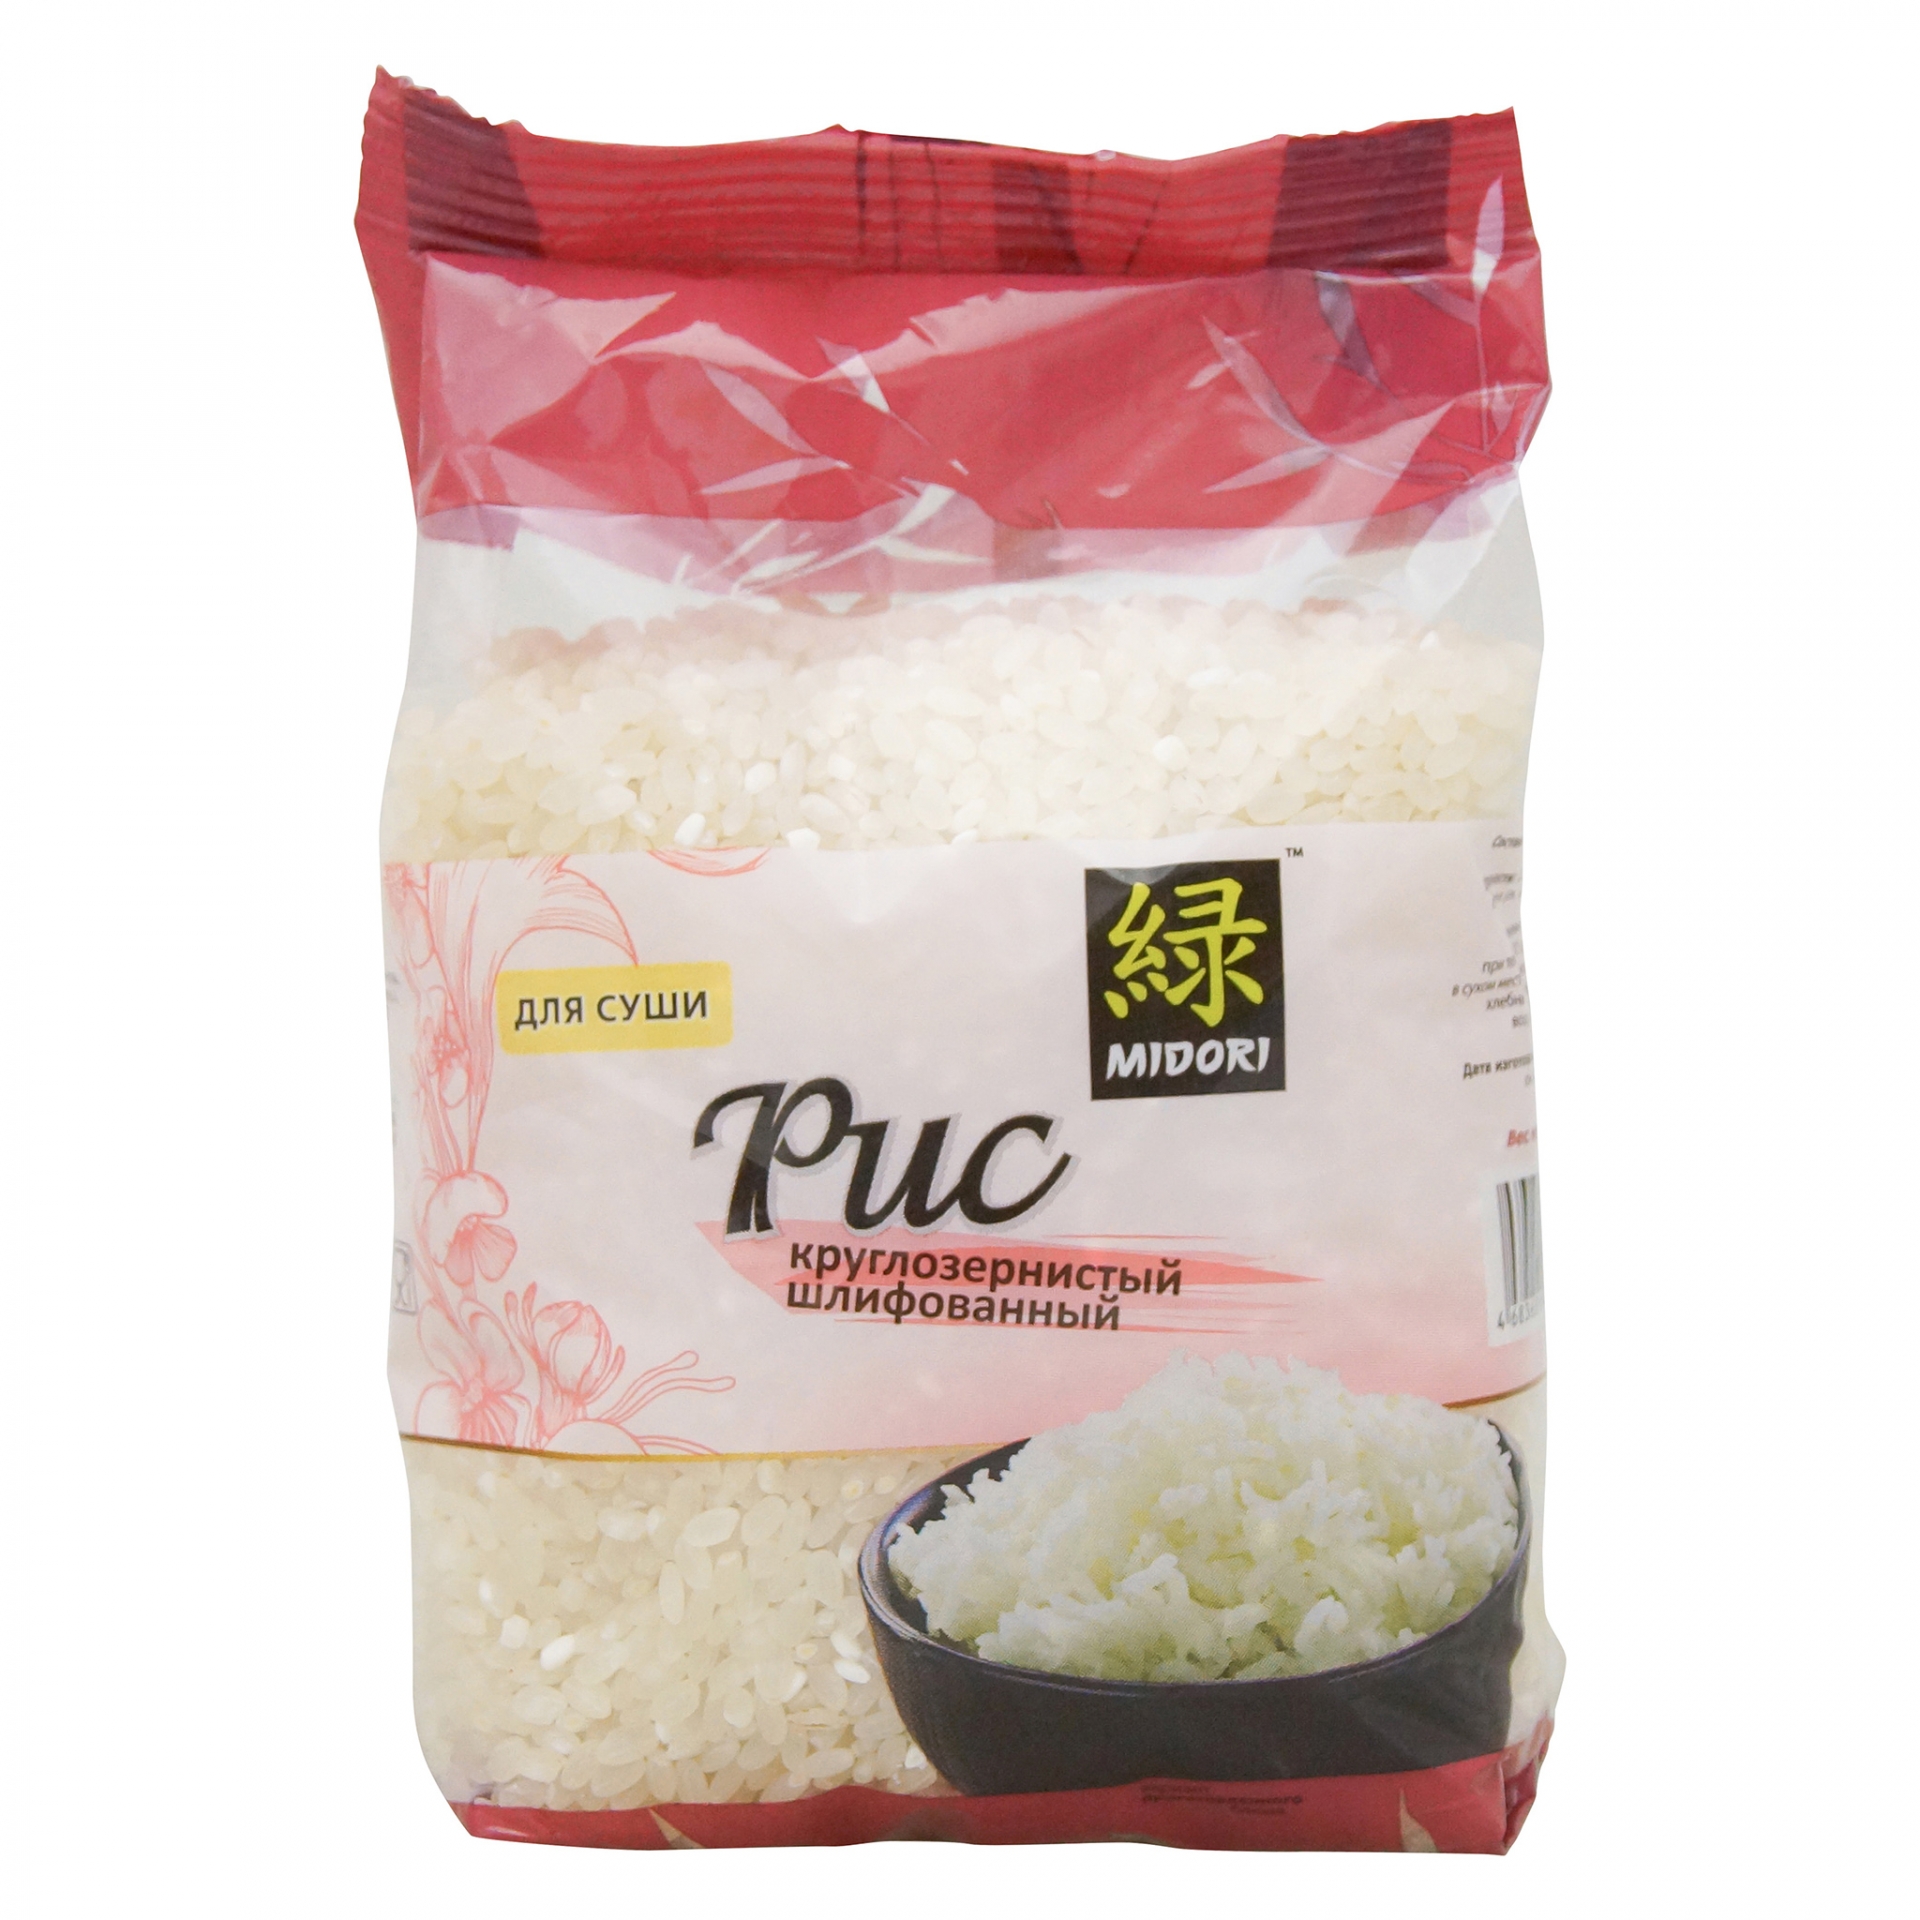 Отзывы о рисе для суши фото 20